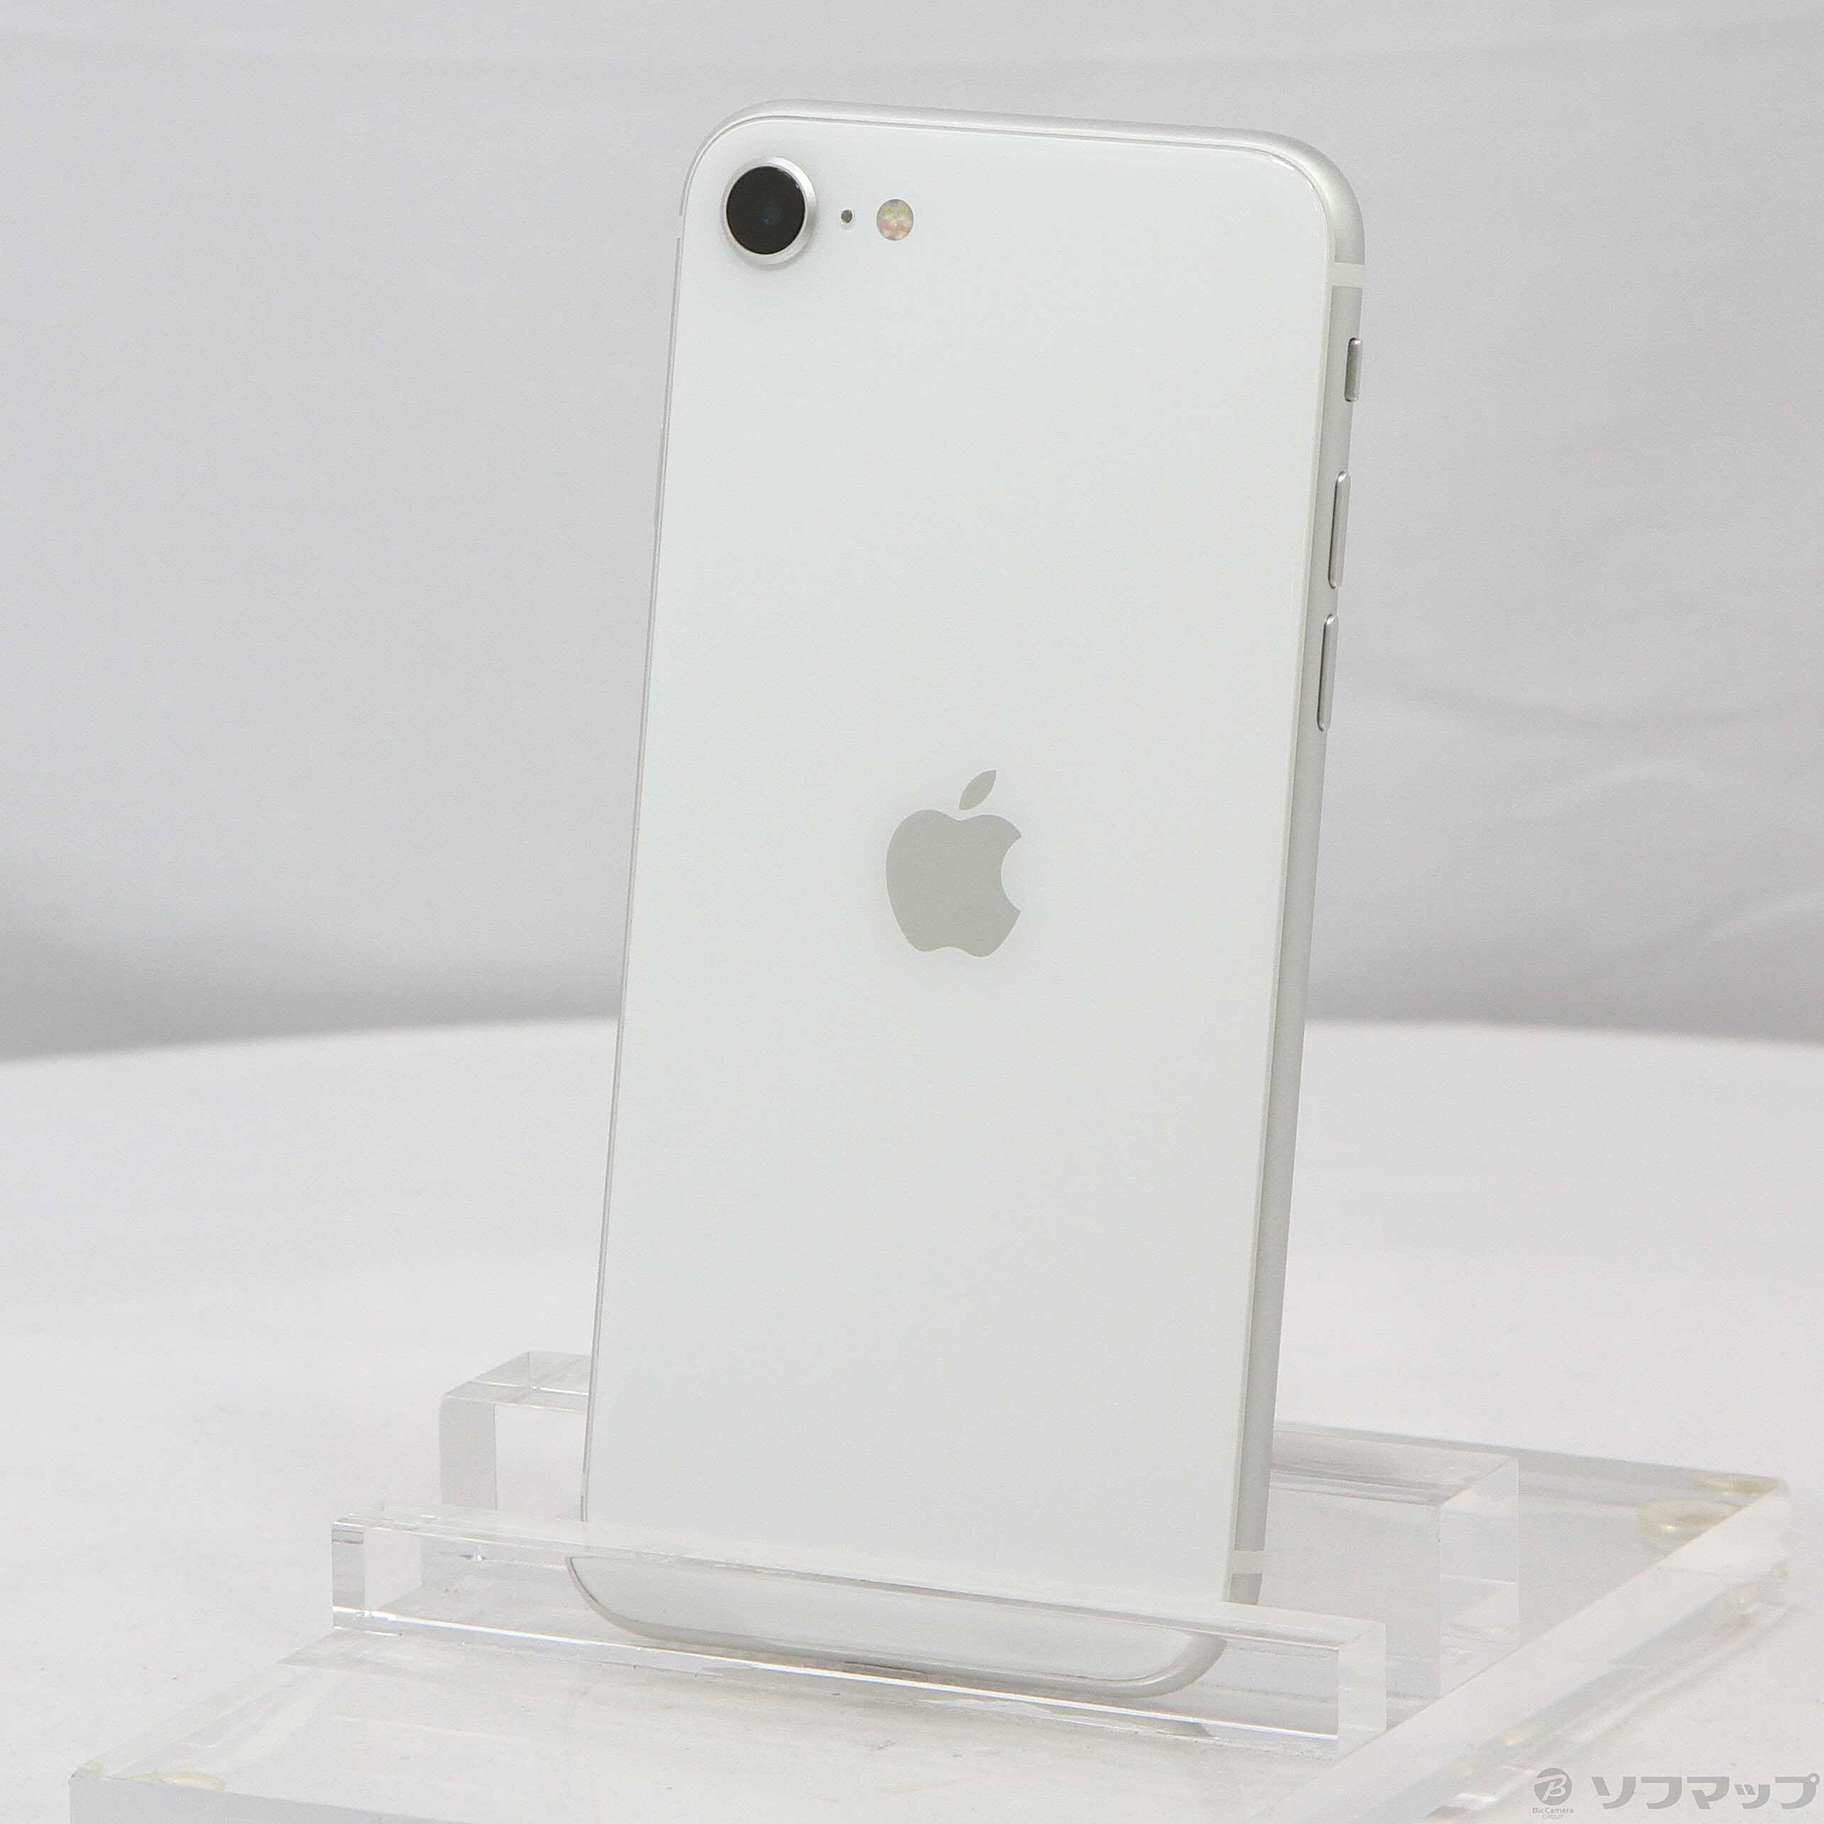 S iPhone SE 第2世代 (SE2) ホワイト 128GB SIMフリー